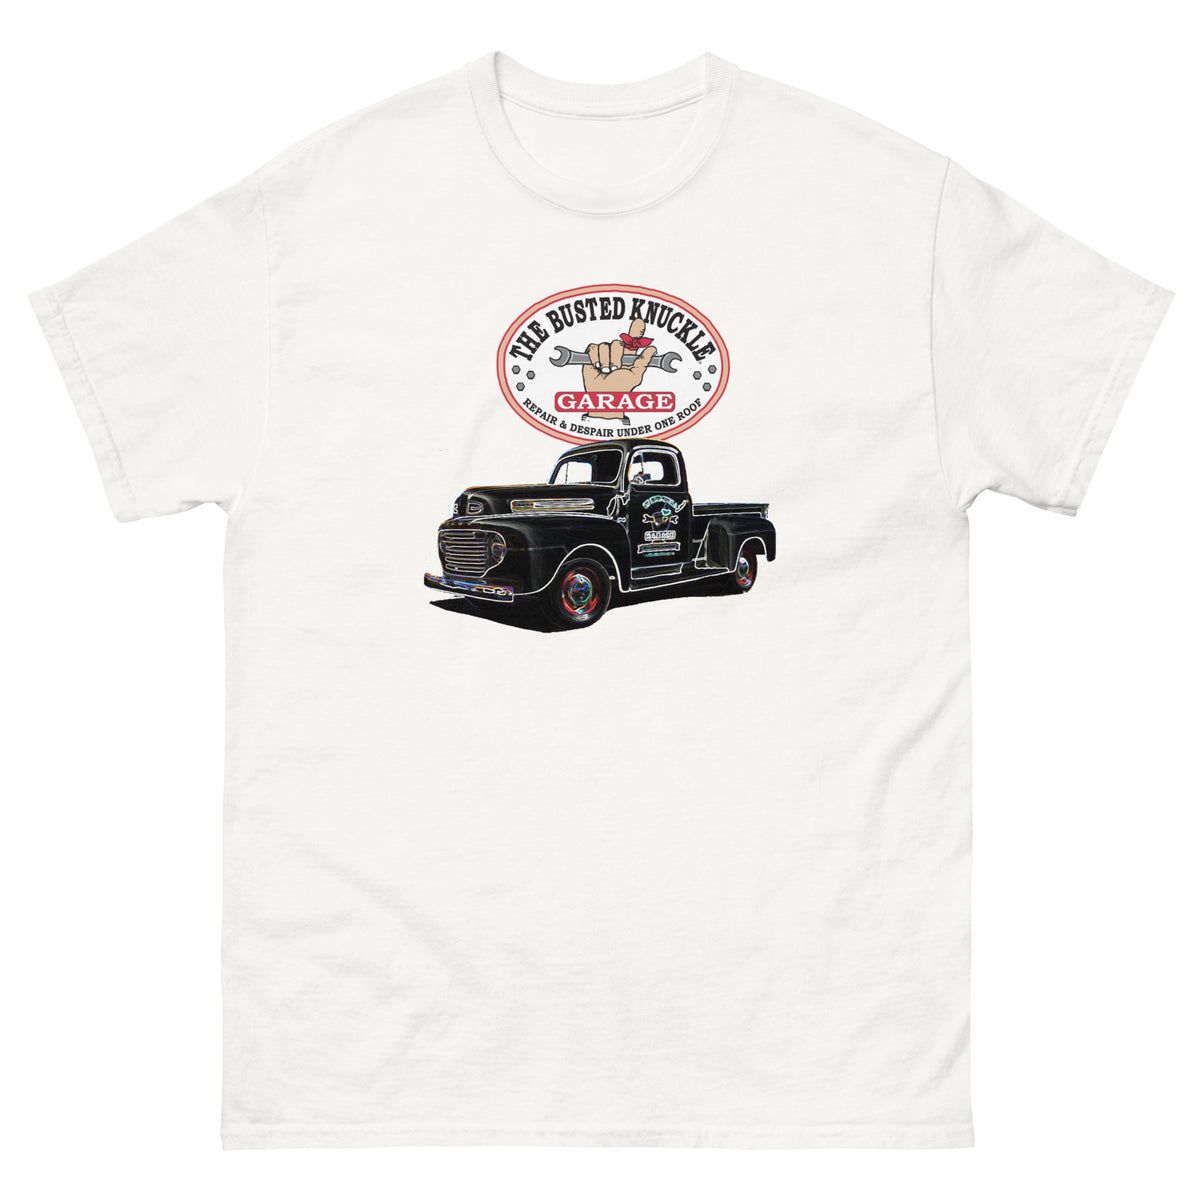 Busted Knuckle Garage Vintage Shop Truck T-Shirt